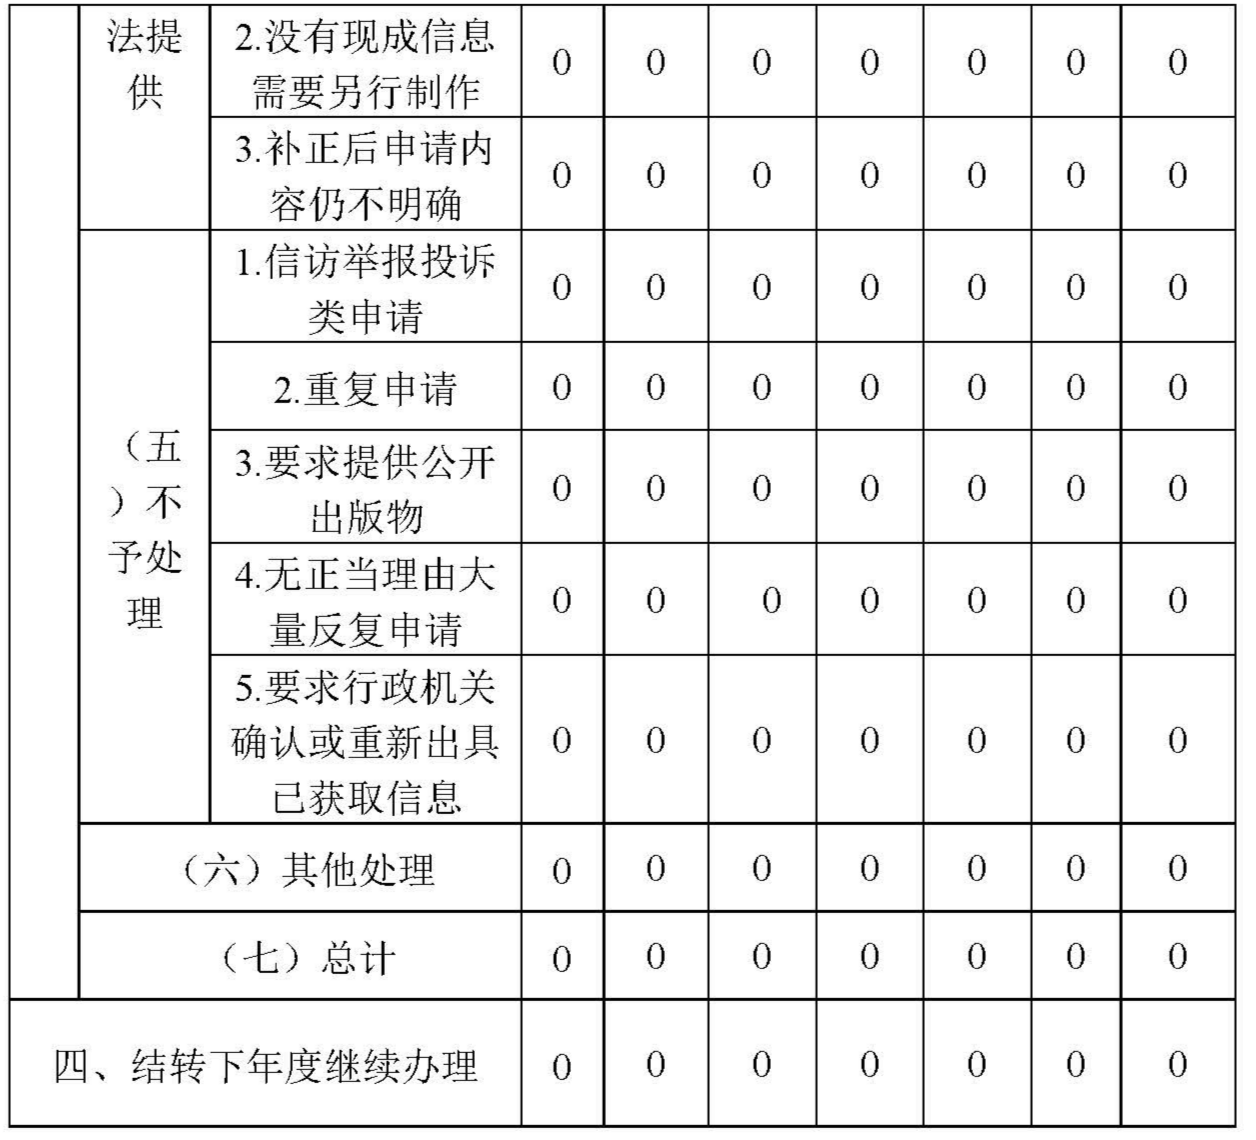 广州开发区云埔工业区管理委员会2020年政府信息公开工作年度报告_页面_4.jpg